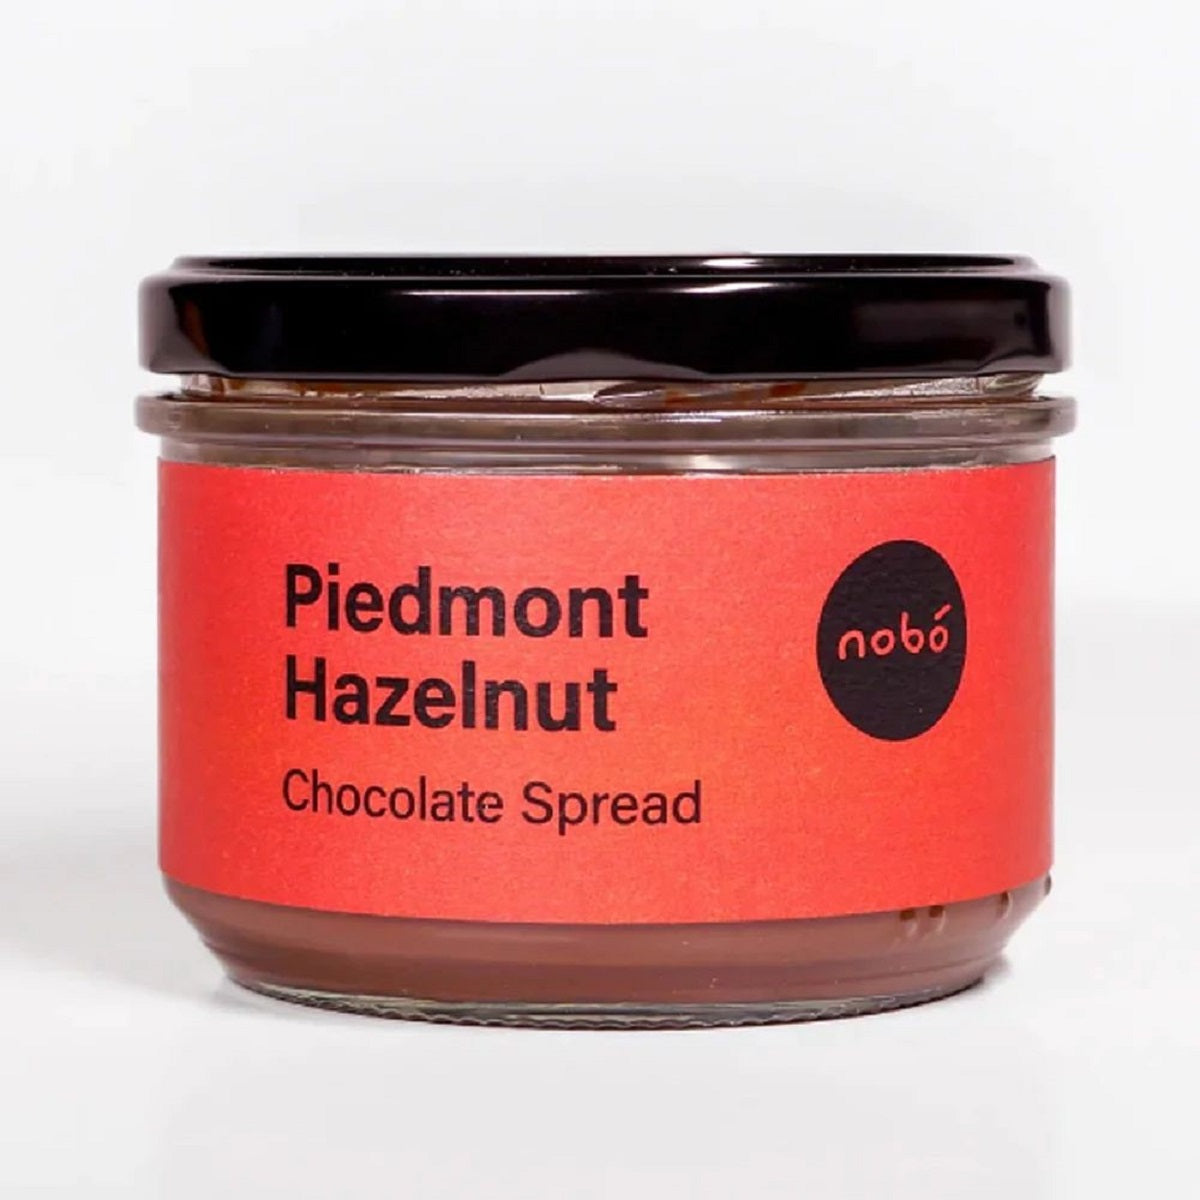 Nobó Piedmont Hazelnut Chocolate Spread 200g